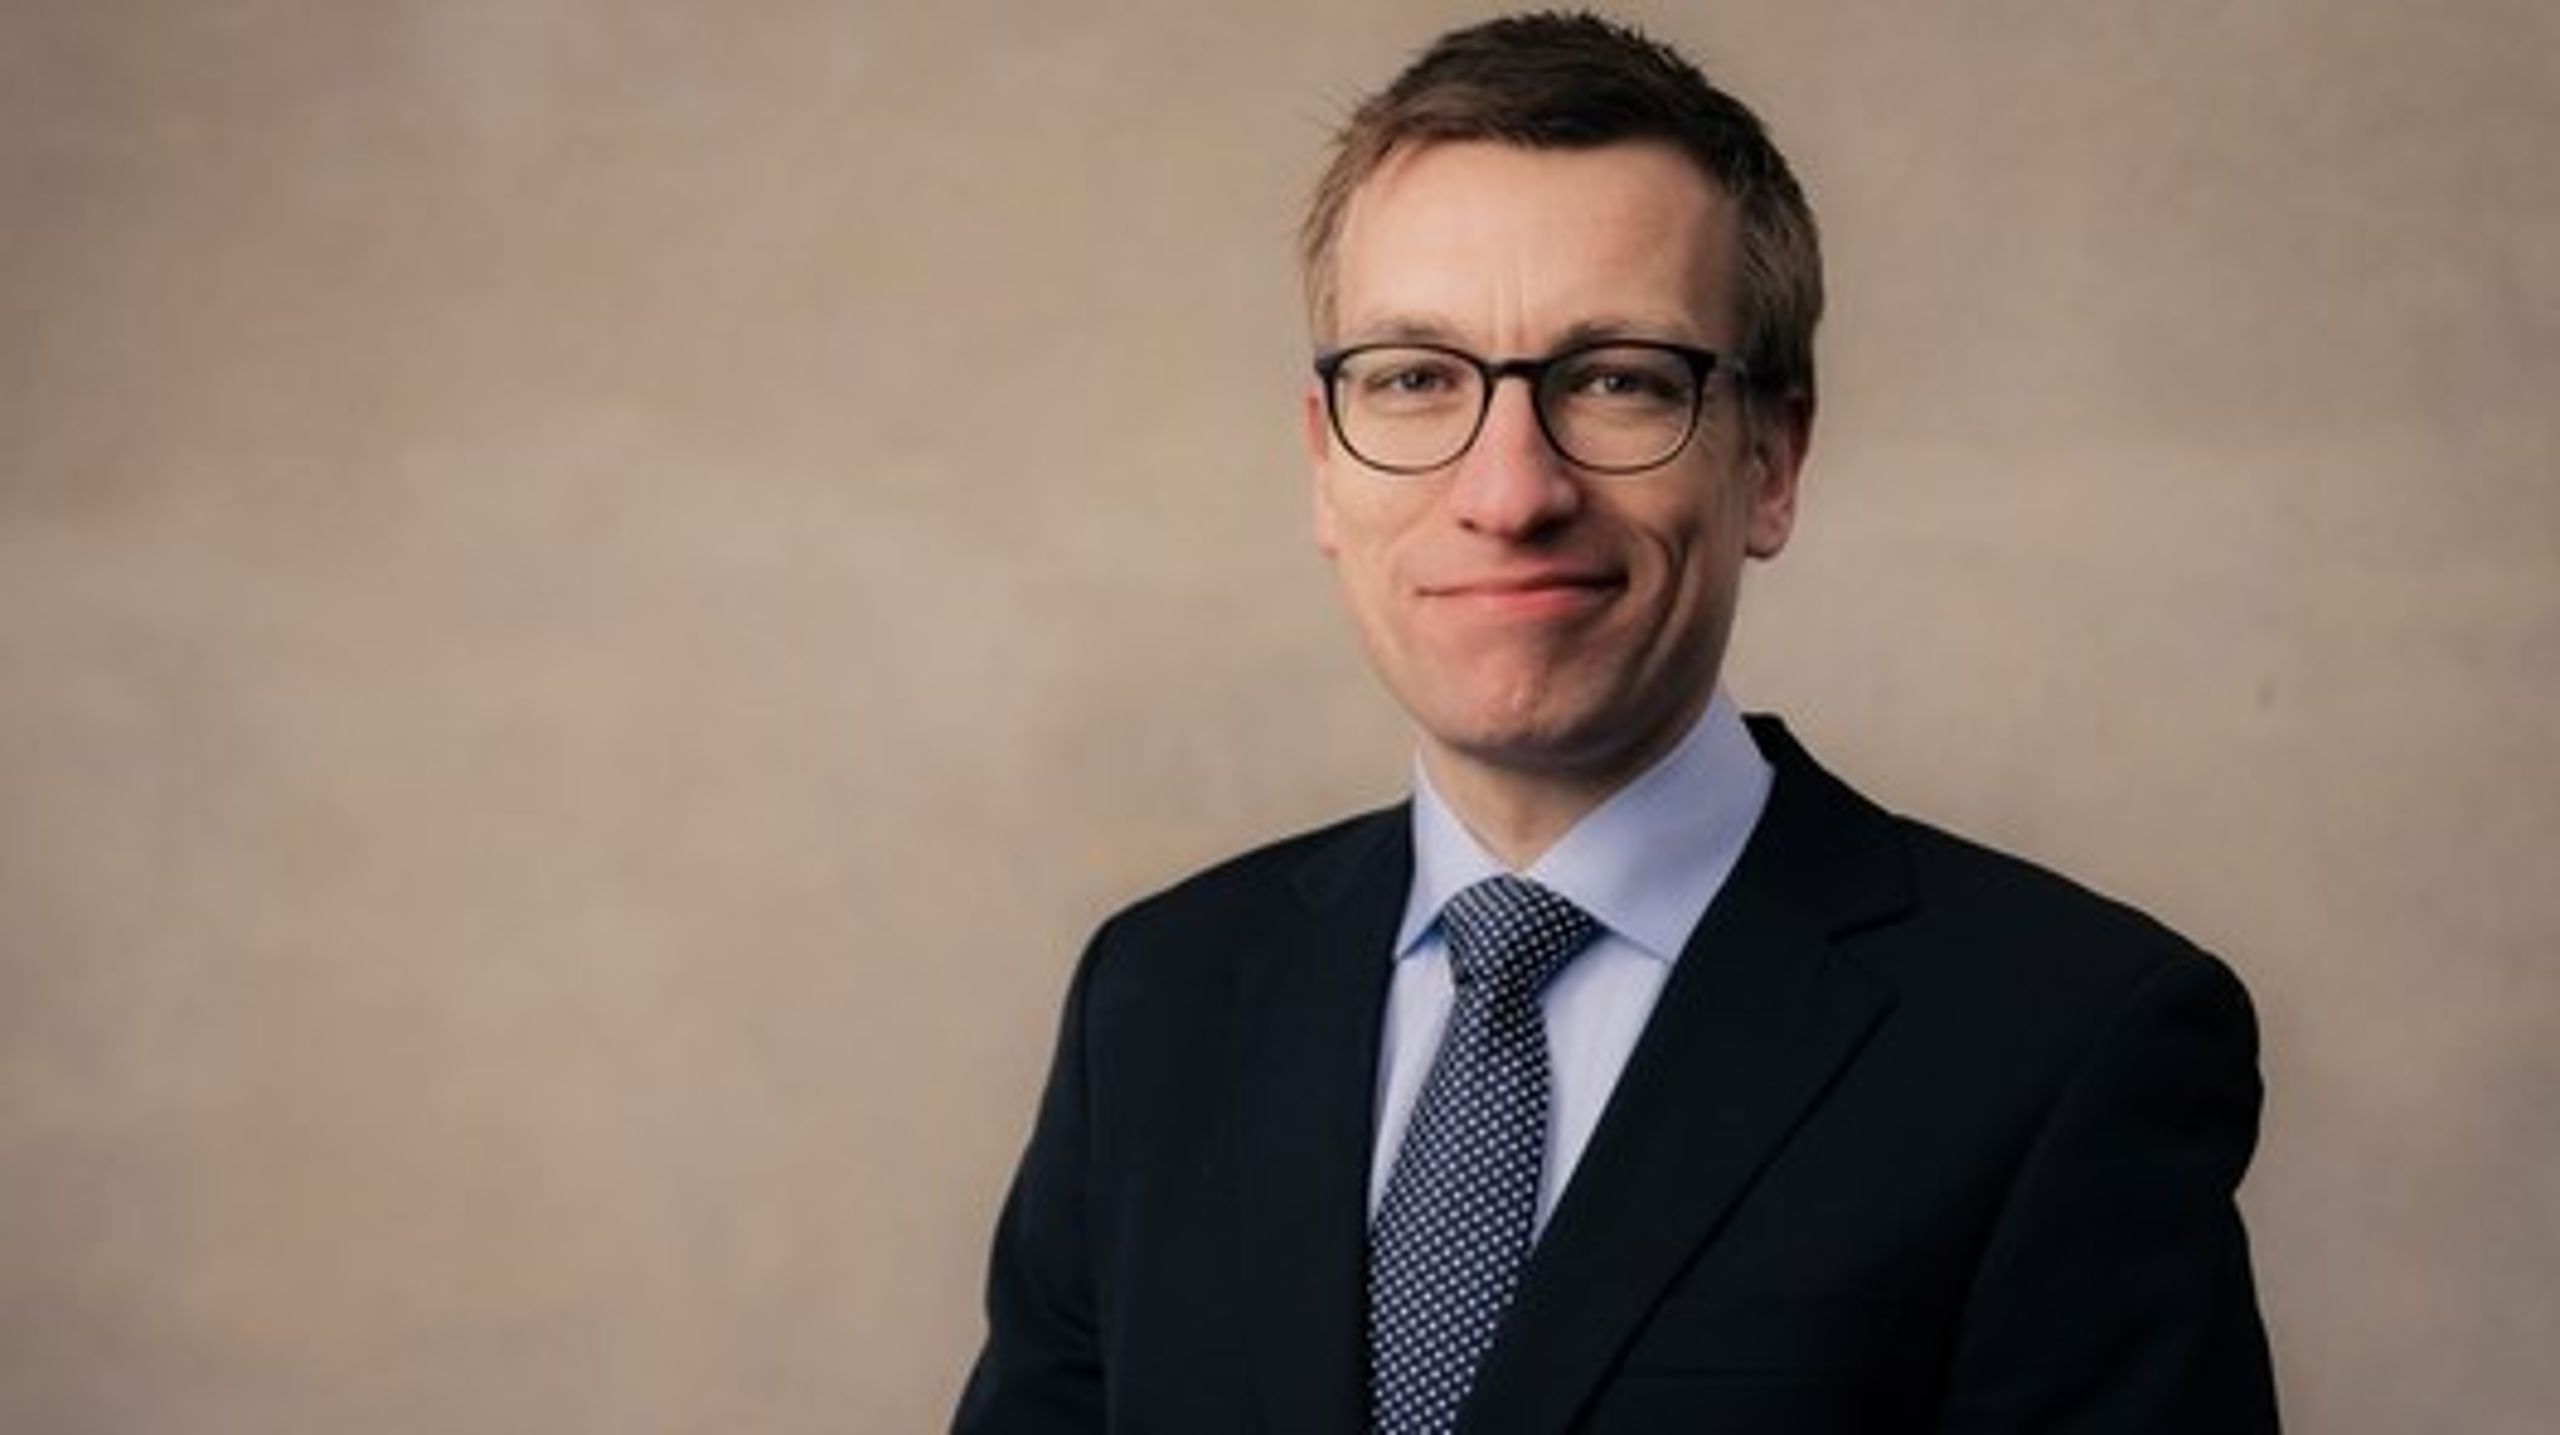 <div>CEPOS' fungerende cheføkonom, Jørgen Sloth, vil overtage rollen permanent fra det kommende år.<br></div>